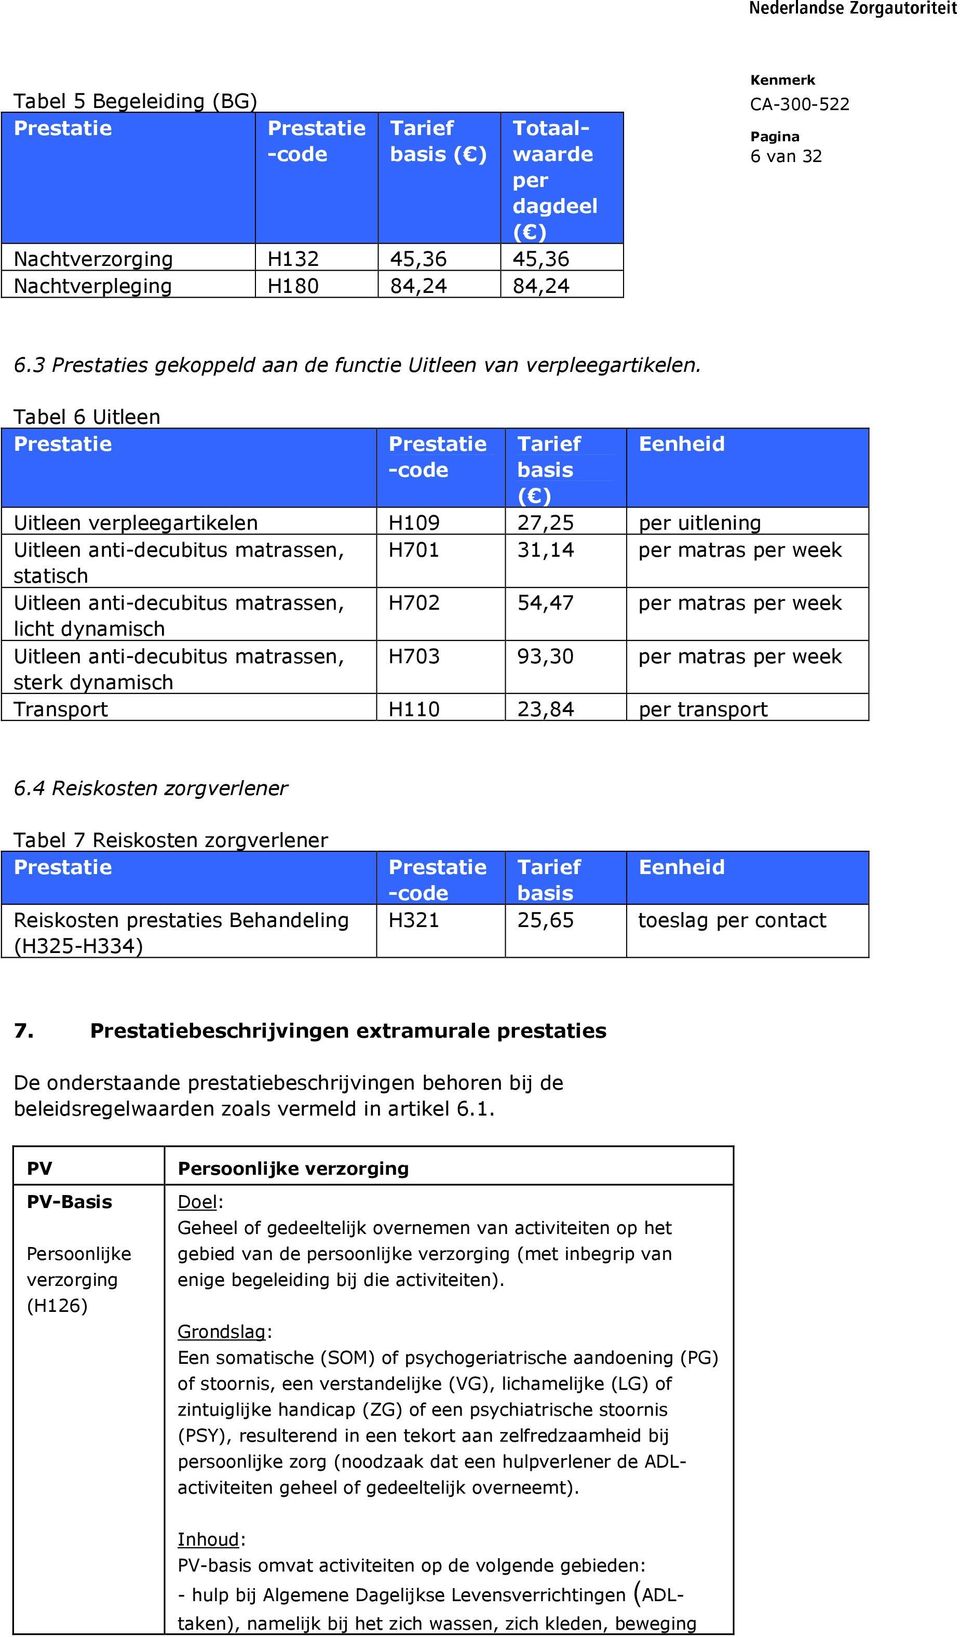 Tabel 6 Uitleen Prestatie Prestatie -code Tarief basis ( ) Eenheid Uitleen verpleegartikelen H109 27,25 per uitlening Uitleen anti-decubitus matrassen, H701 31,14 per matras per week statisch Uitleen